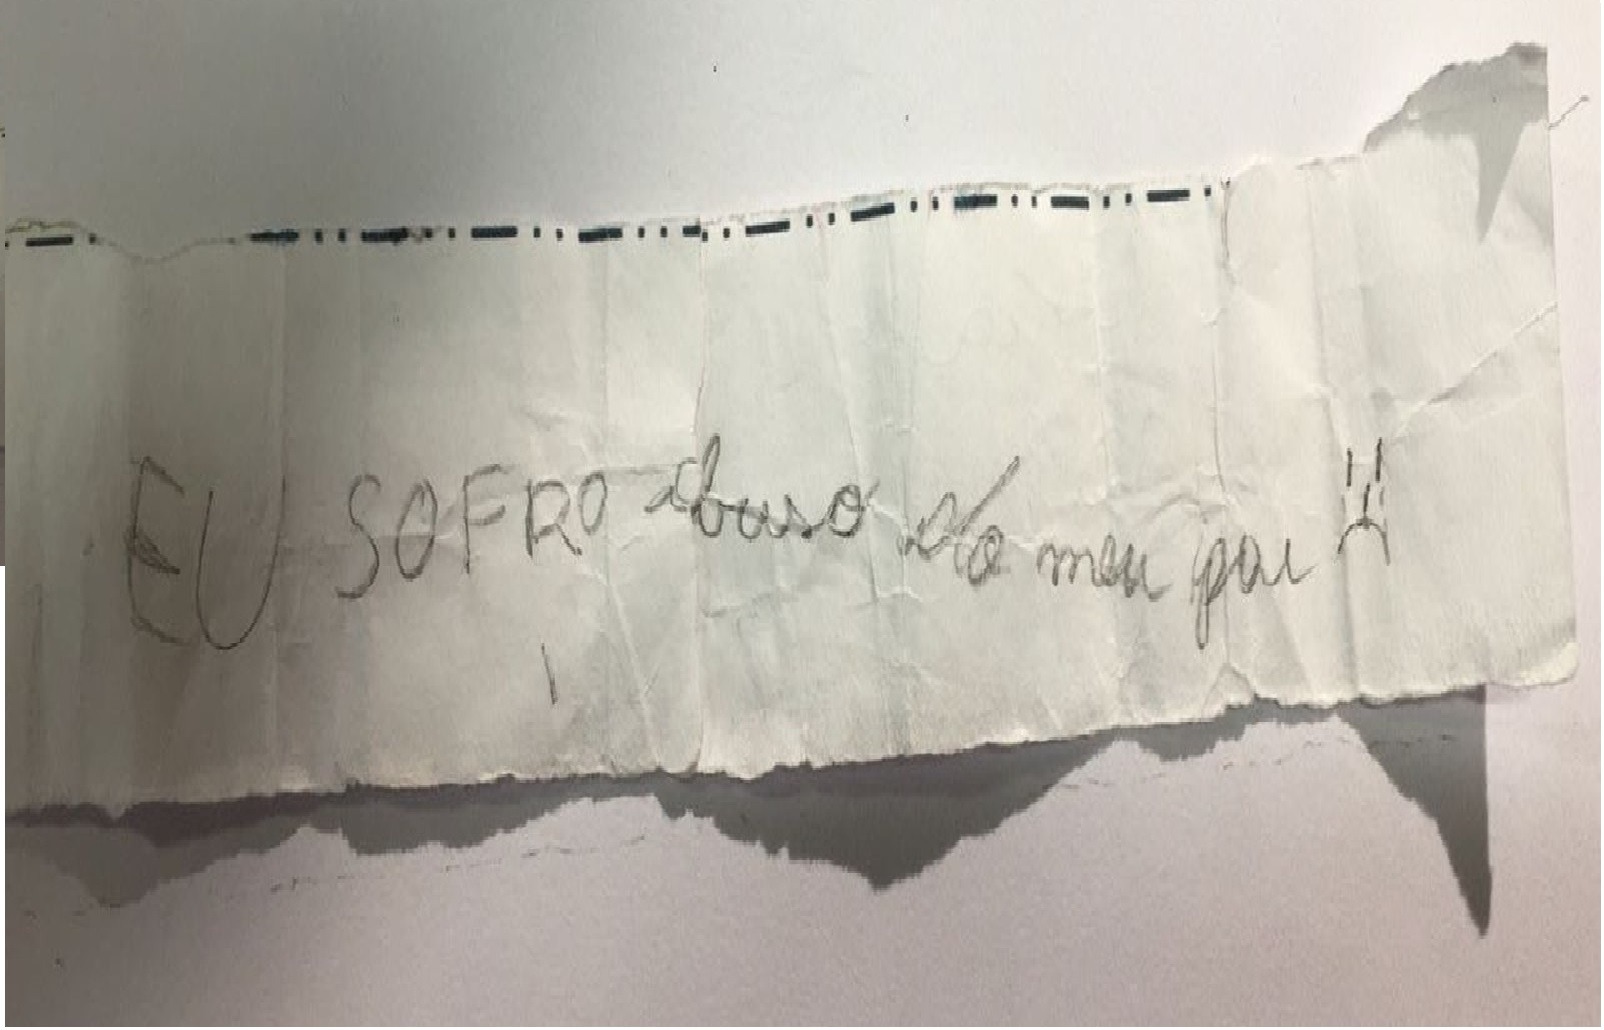 Menina de 11 anos escreveu um bilhete para relatar abusos que sofria do pai em Paulínia (SP) (Foto: Polícia Civil)